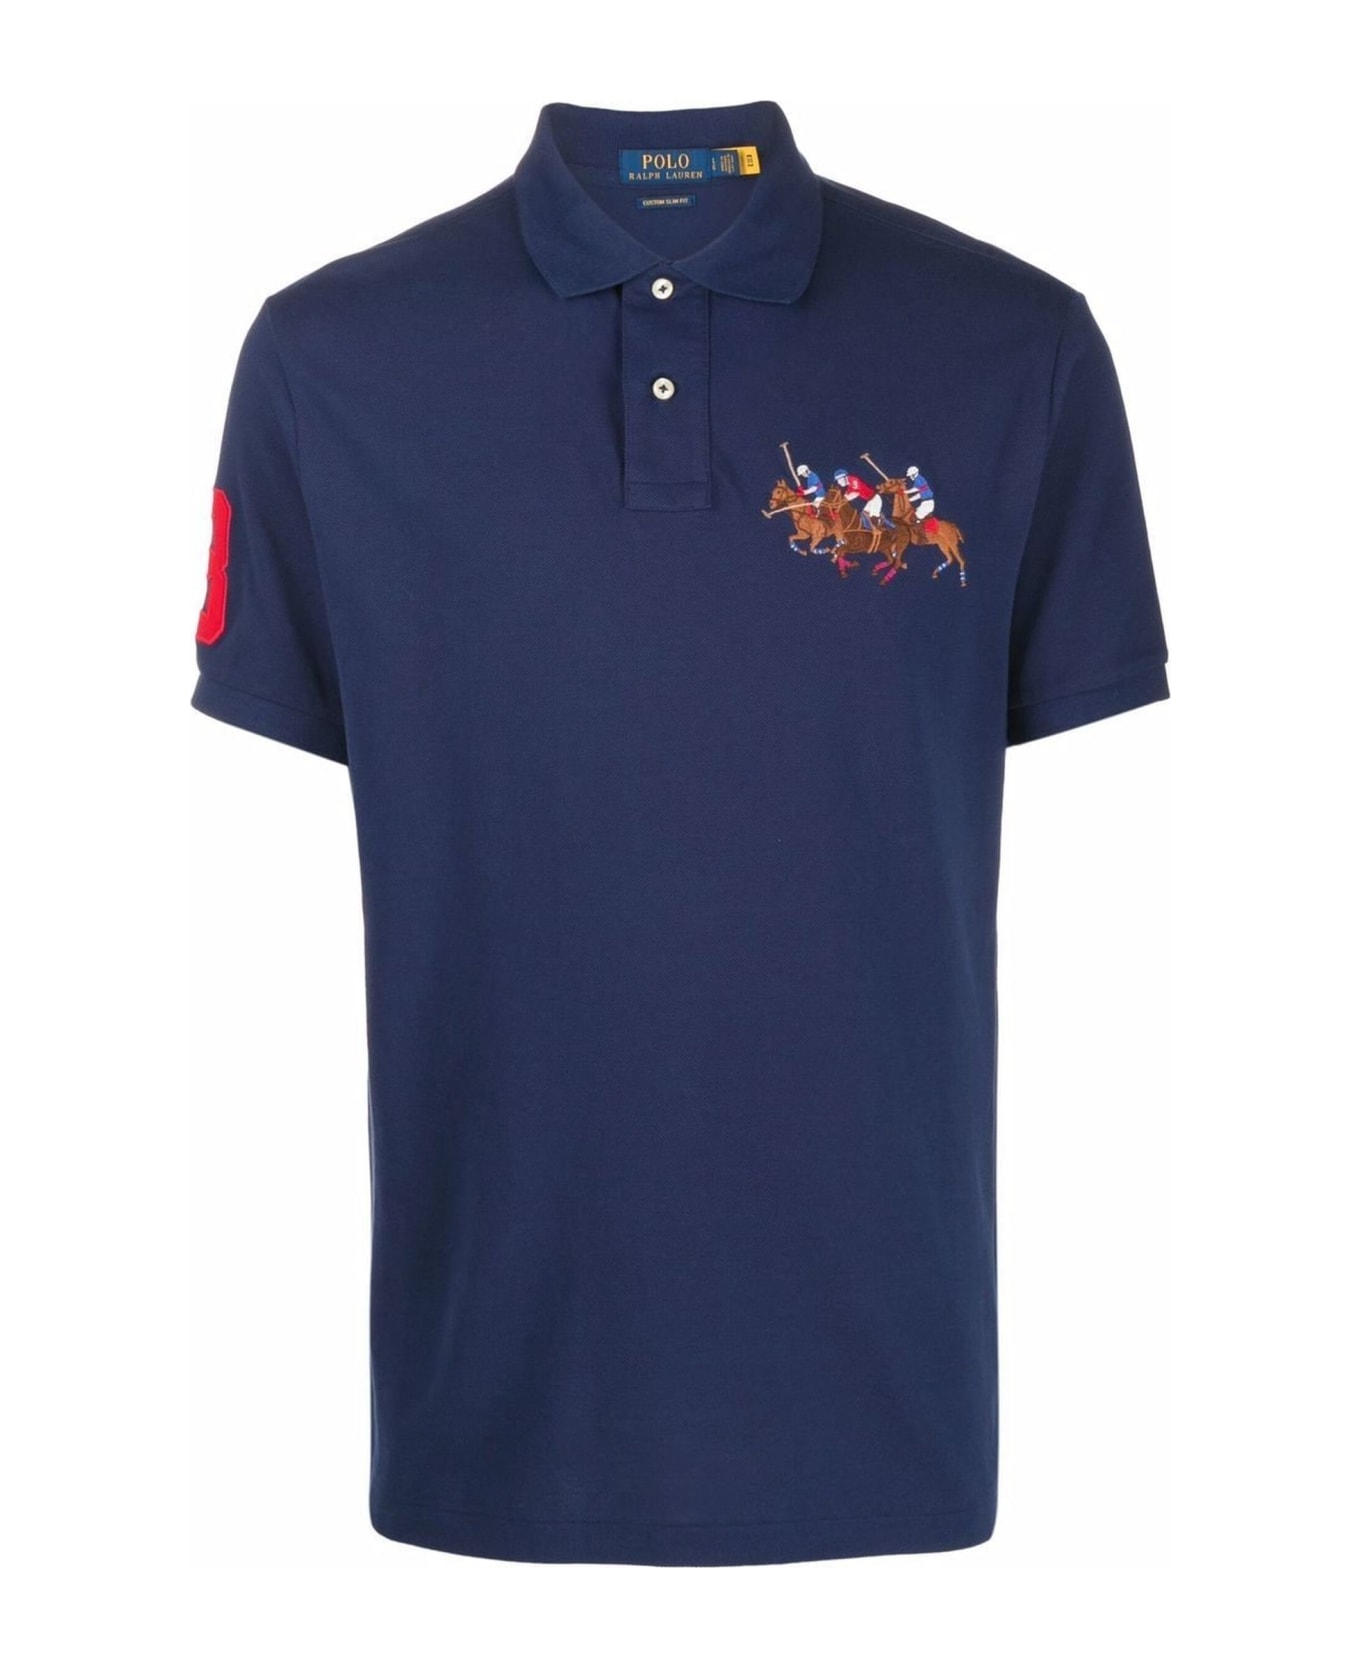 Ralph Lauren Blue Cotton Polo Shirt - Newport Navy